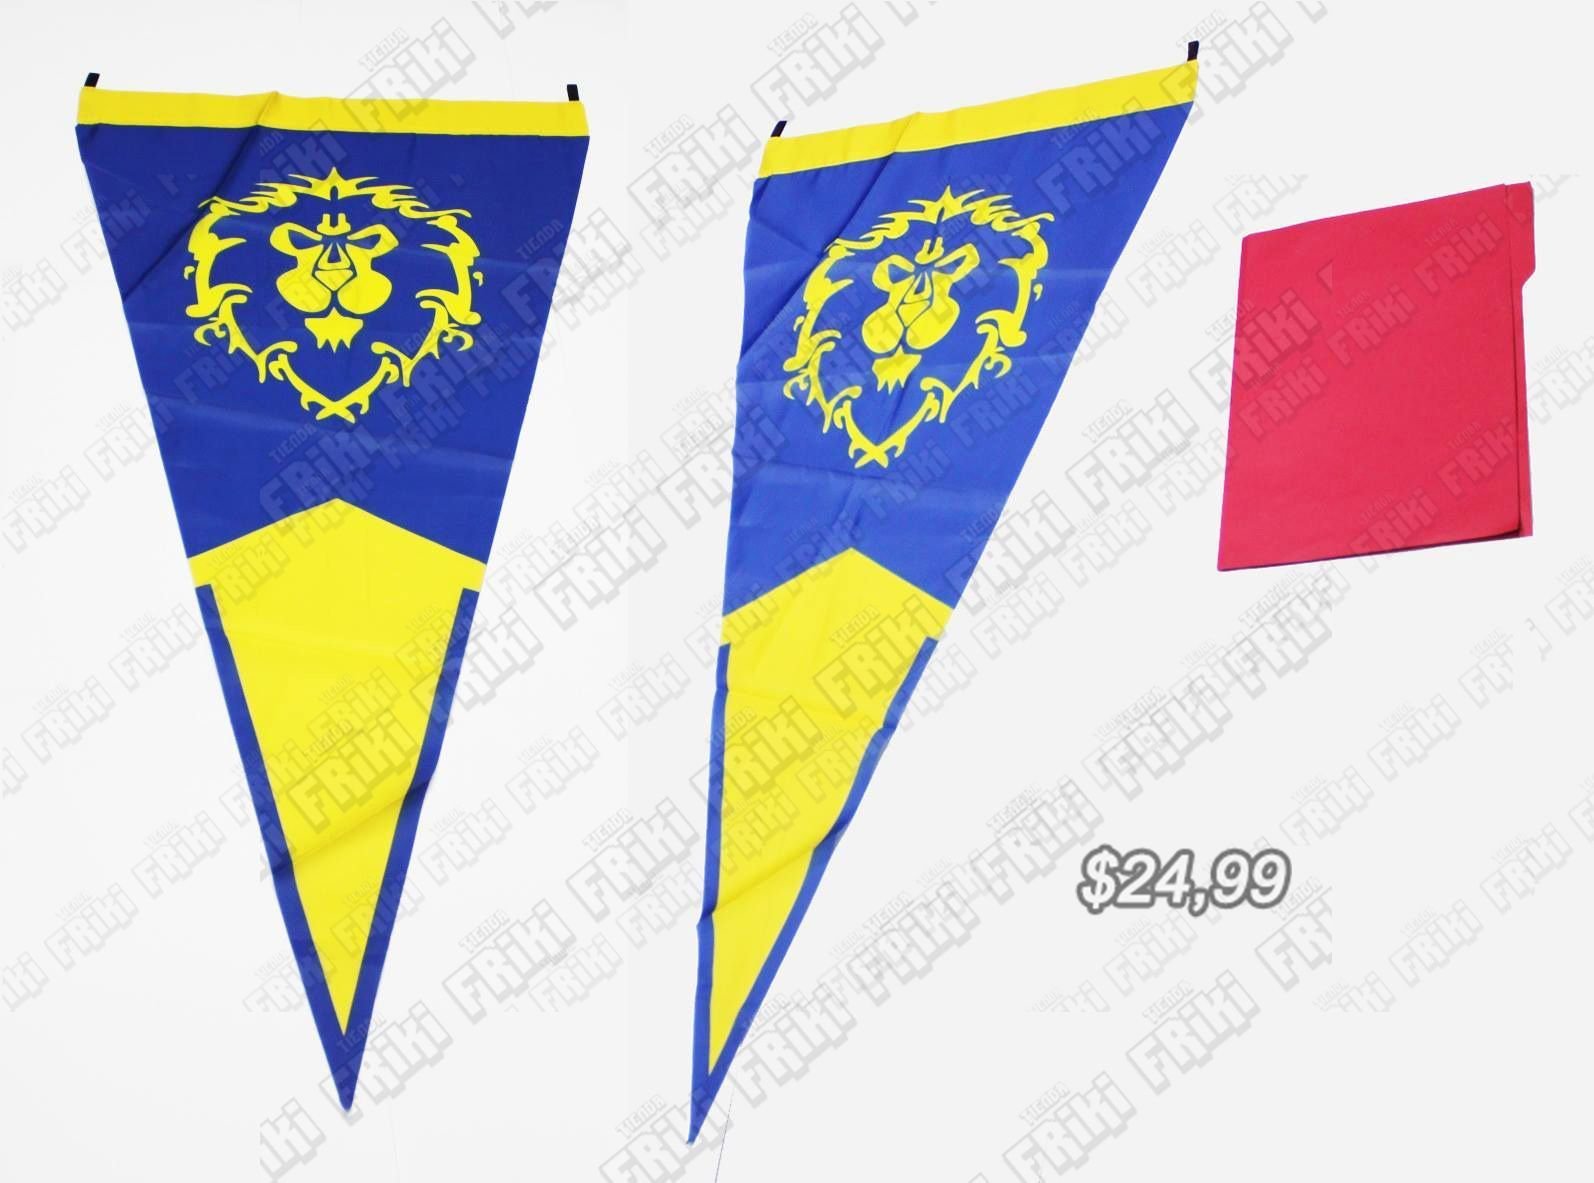 Bandera Videojuegos World of Warcraft Alianza Ecuador Comprar Venden, Bonita Apariencia comodo, practica, Hermoso material de poliester Color amarillo y azul Estado nuevo